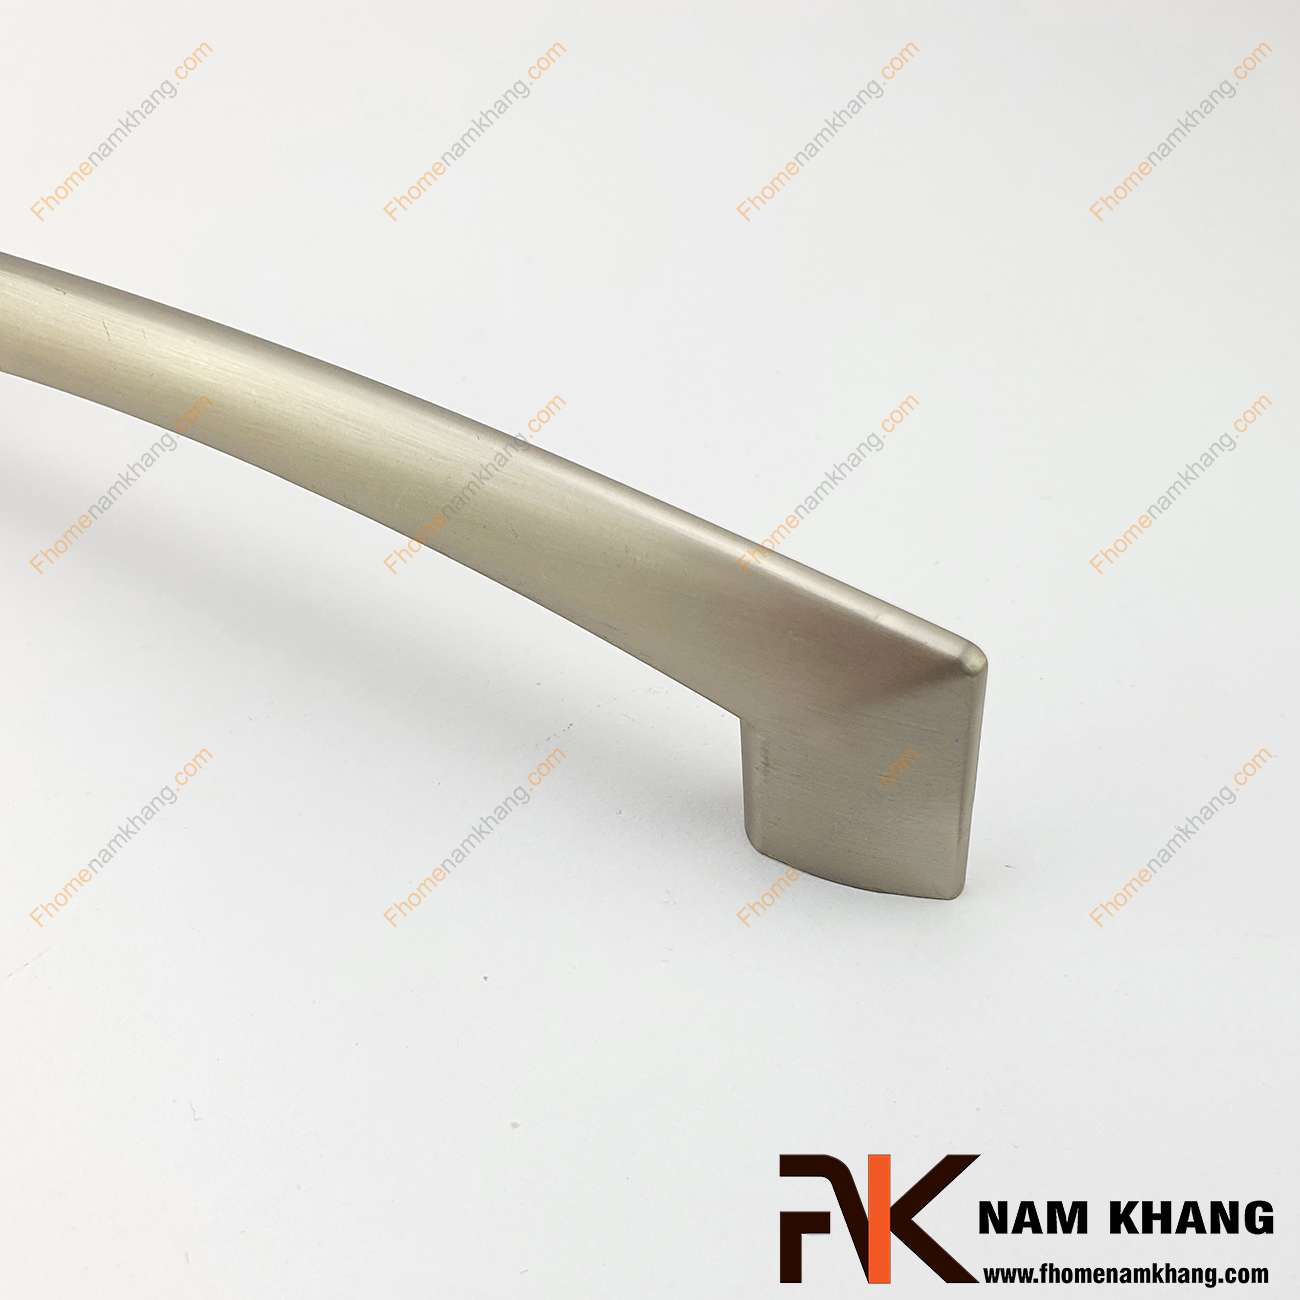  Thiết kế sản phẩm Tay nắm tủ màu ghi xước NK290-128NX có thiết kế đơn giản với phần thân đặc dạng tròn và phần đế dẹp ở hai đầu của tay nắm.